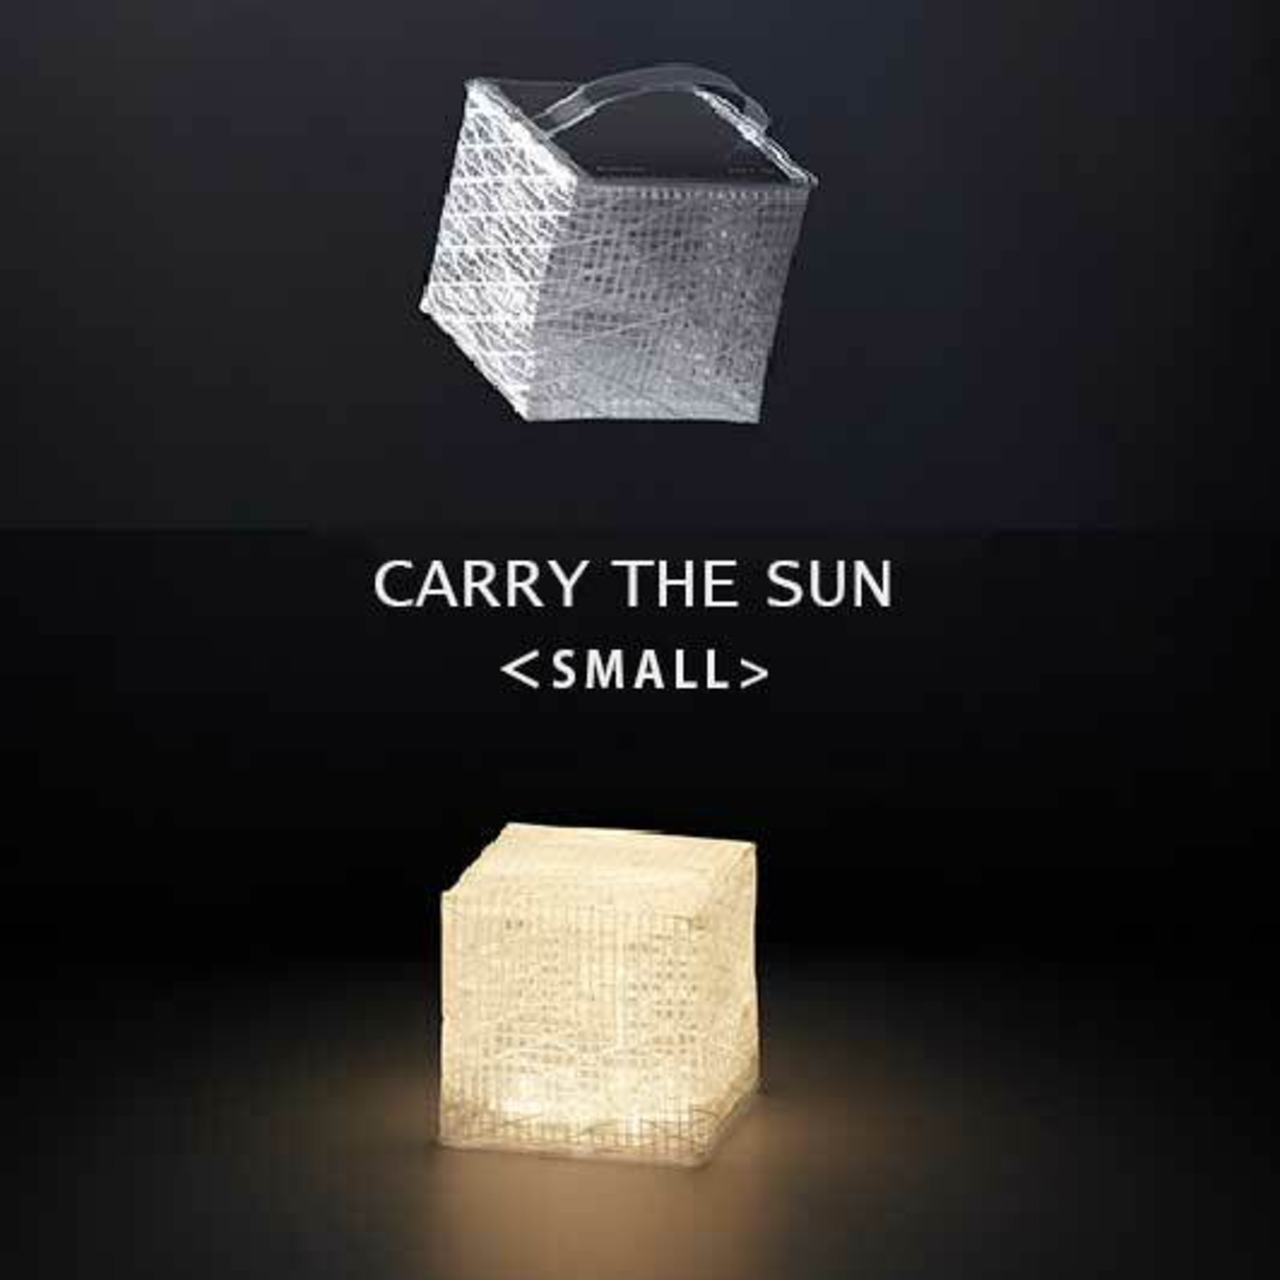 CARRY THE SUN Small キャリーザサン ソーラー パフ モデル チェンジ 商品 折りたたみ LED ランタン 太陽光充電